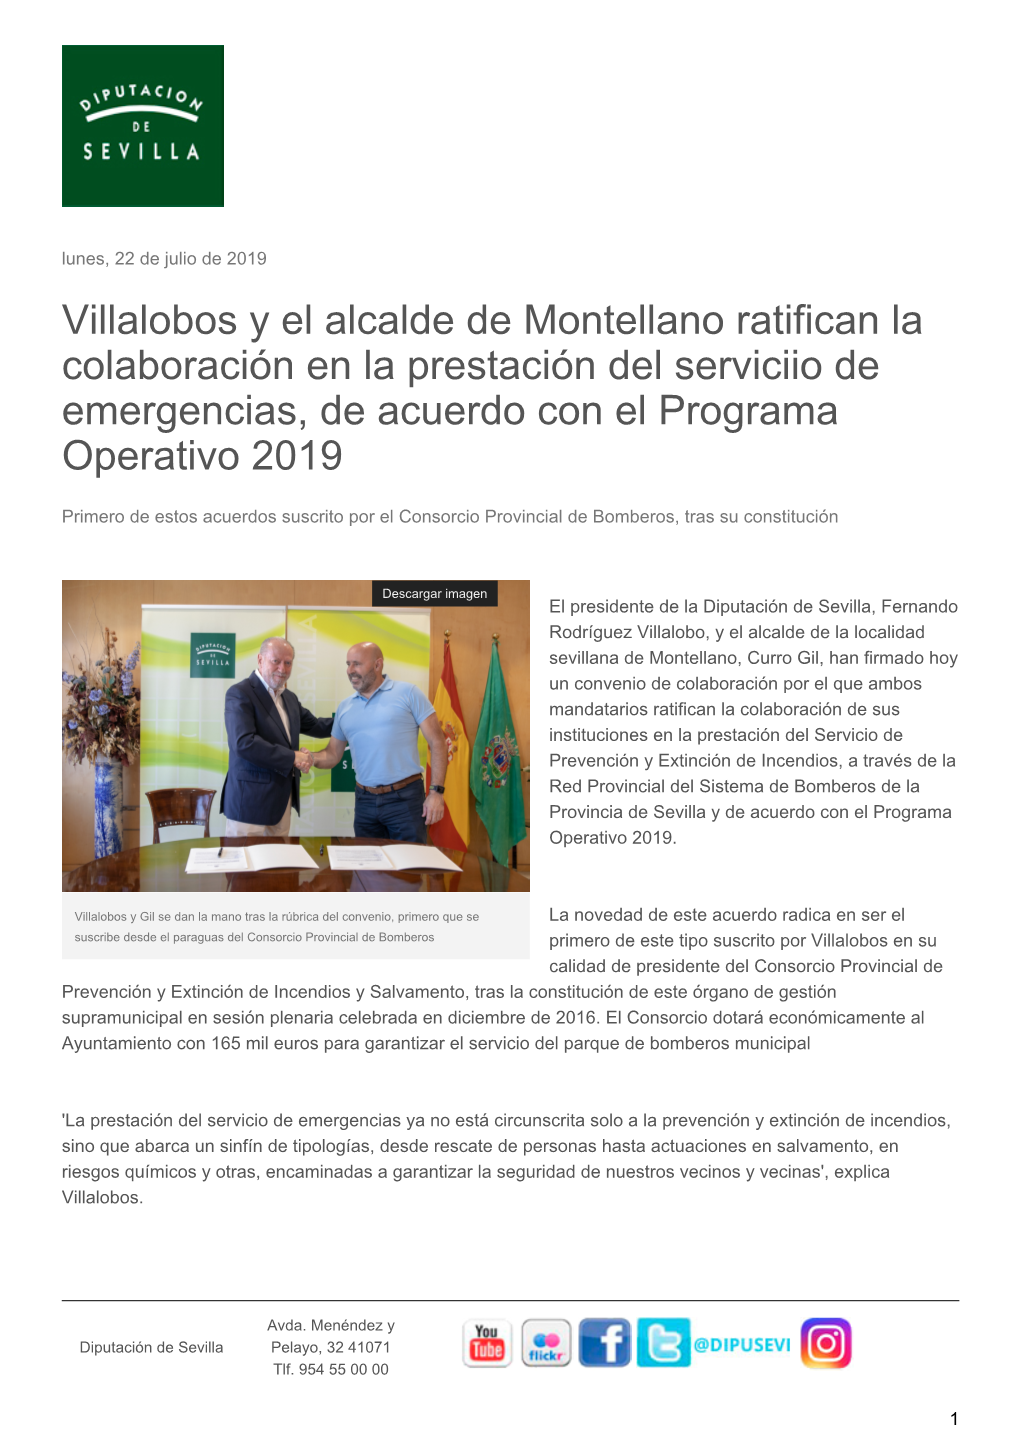 Villalobos Y El Alcalde De Montellano Ratifican La Colaboración En La Prestación Del Serviciio De Emergencias, De Acuerdo Con El Programa Operativo 2019